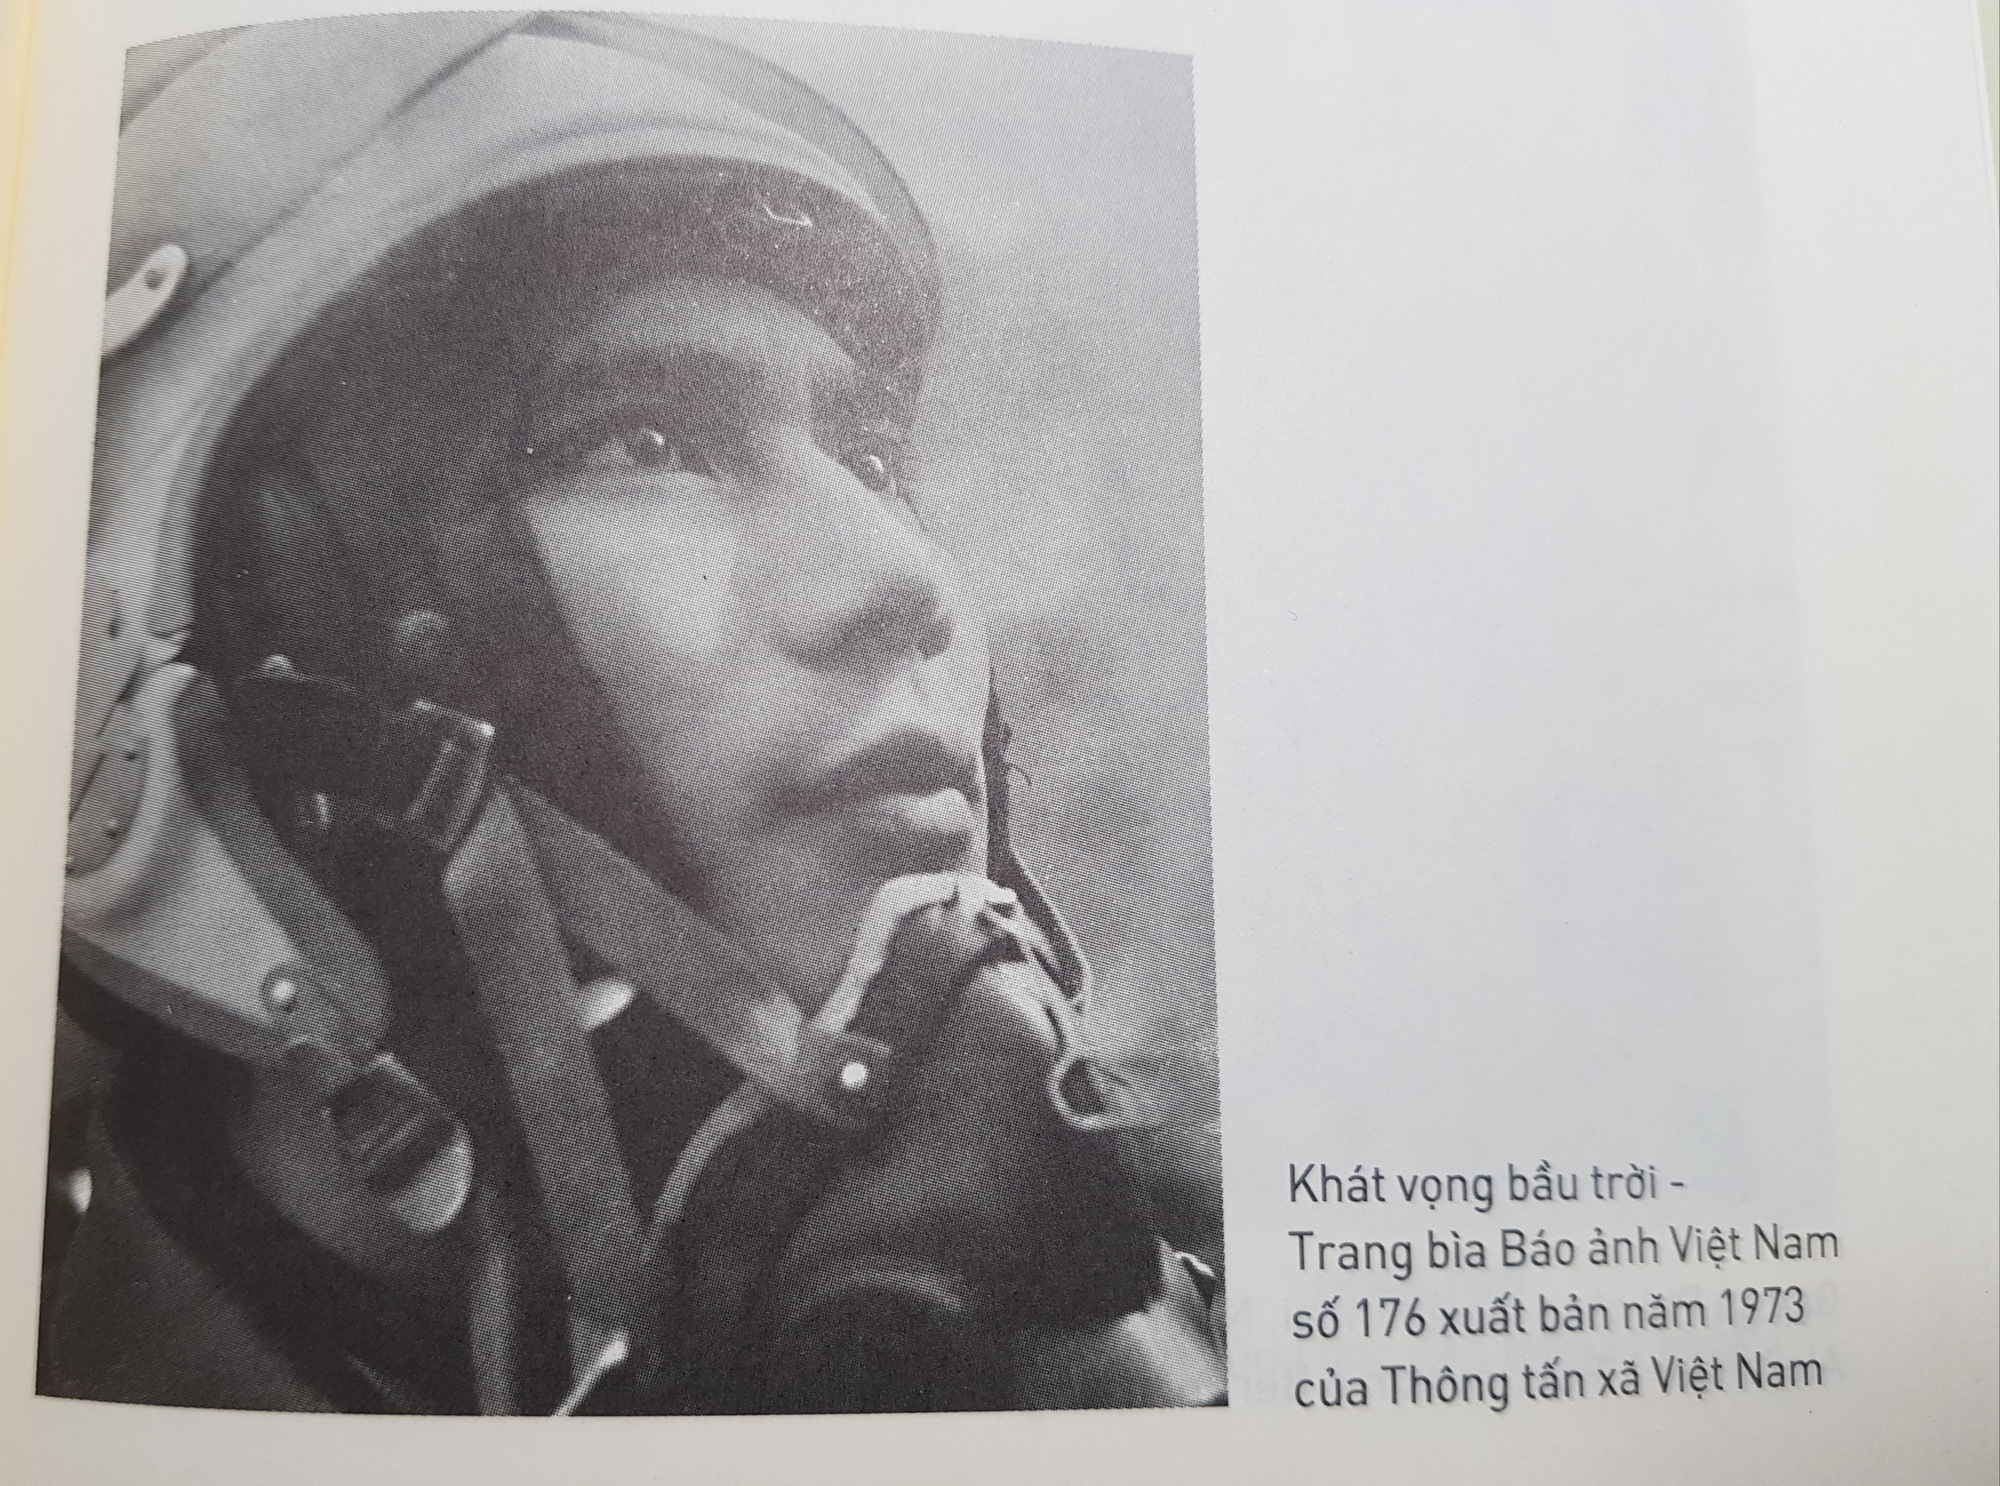 Có gì đặc biệt trong cuốn nhật ký của phi công tiêm kích hạ 6 máy bay Mỹ được phong anh hùng năm 27 tuổi? - Ảnh 11.